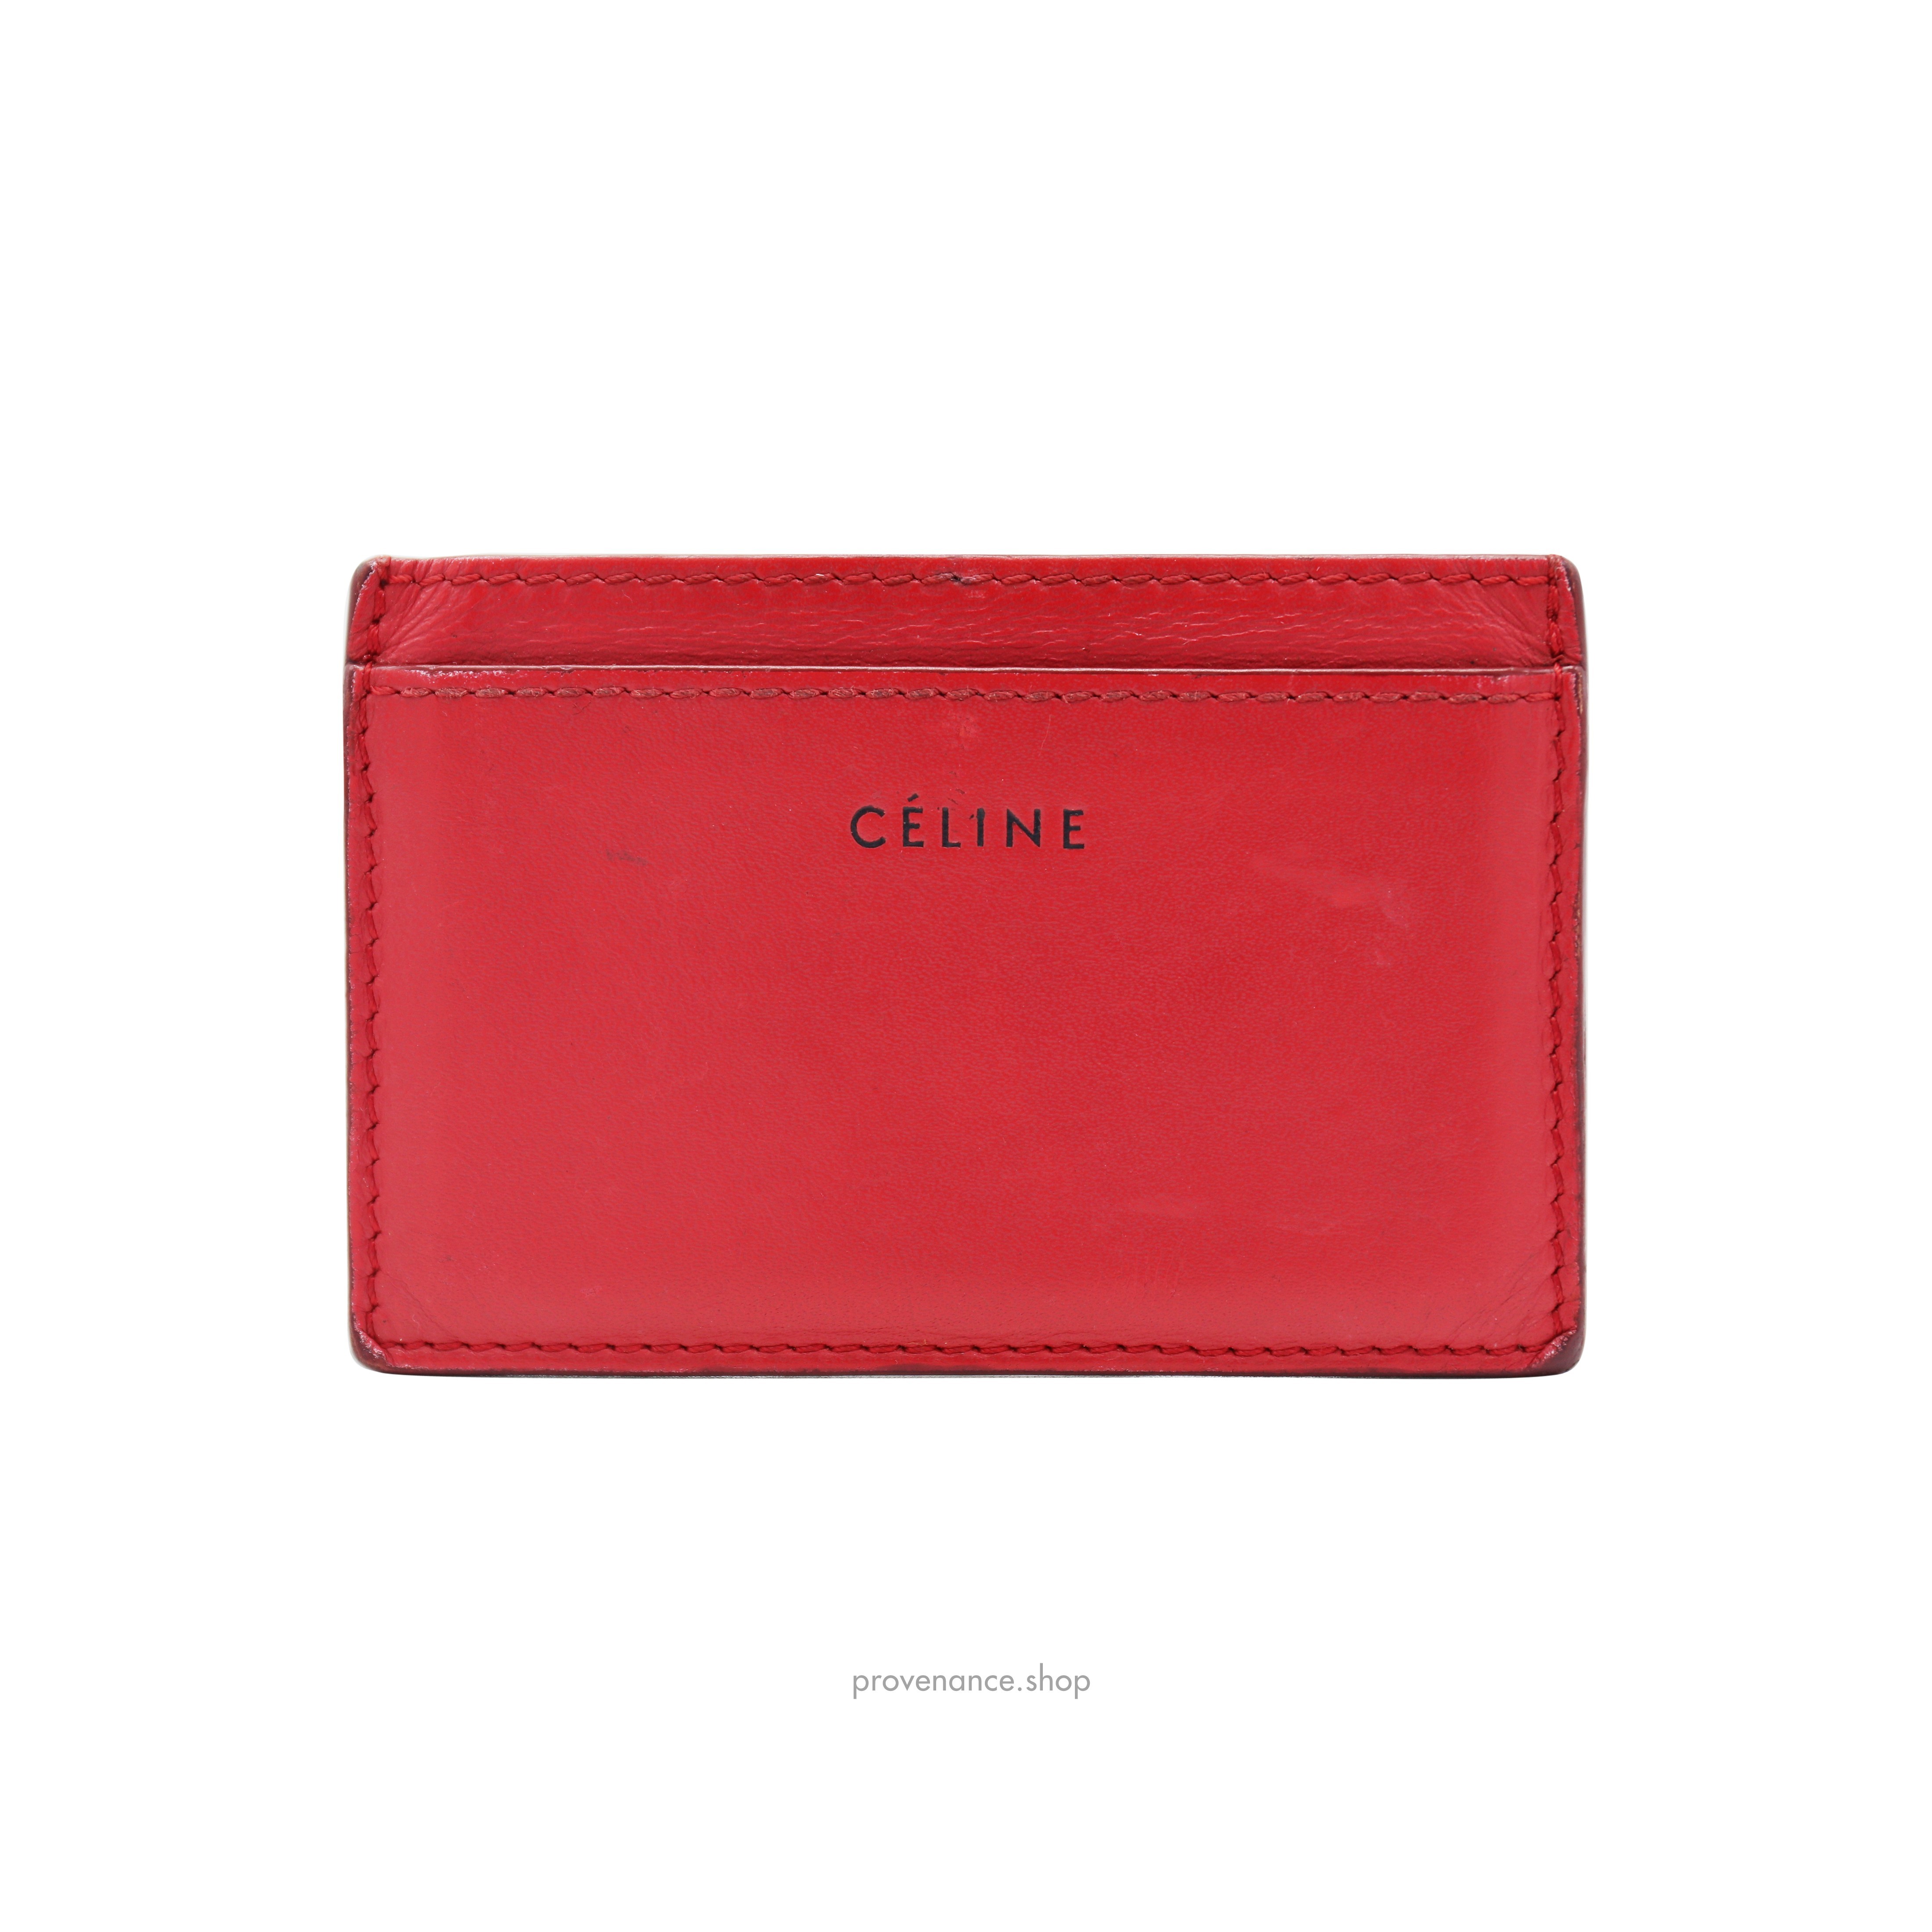 Celine Card Holder Wallet - Red Leather - 2